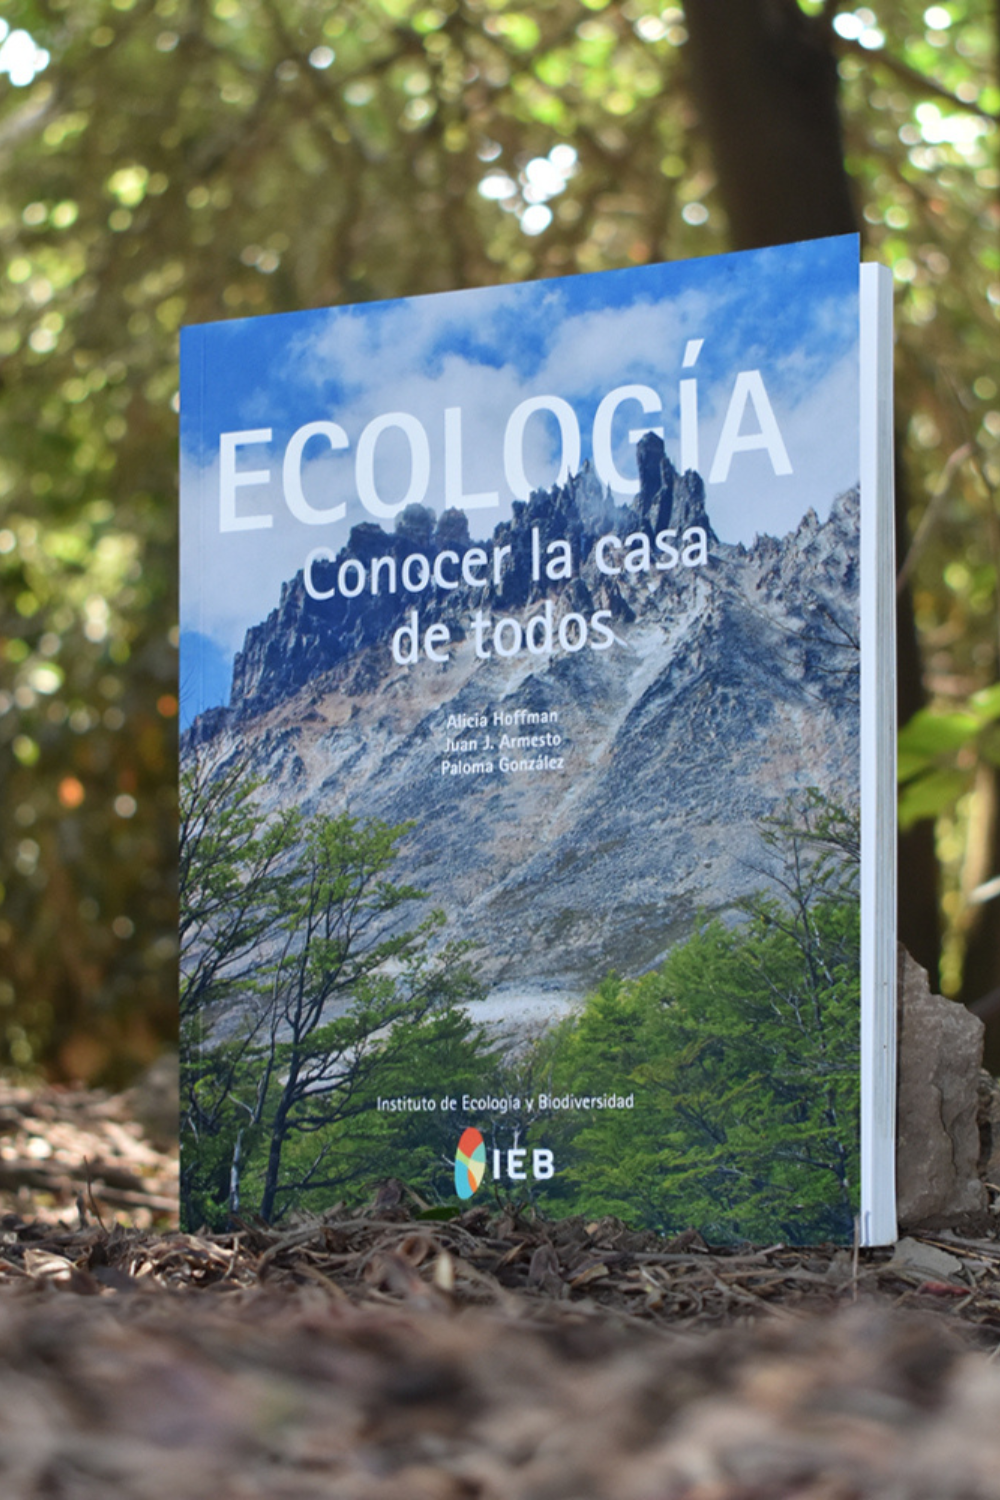 Libro "Ecología: Conocer la casa de todos" | Wild Lama